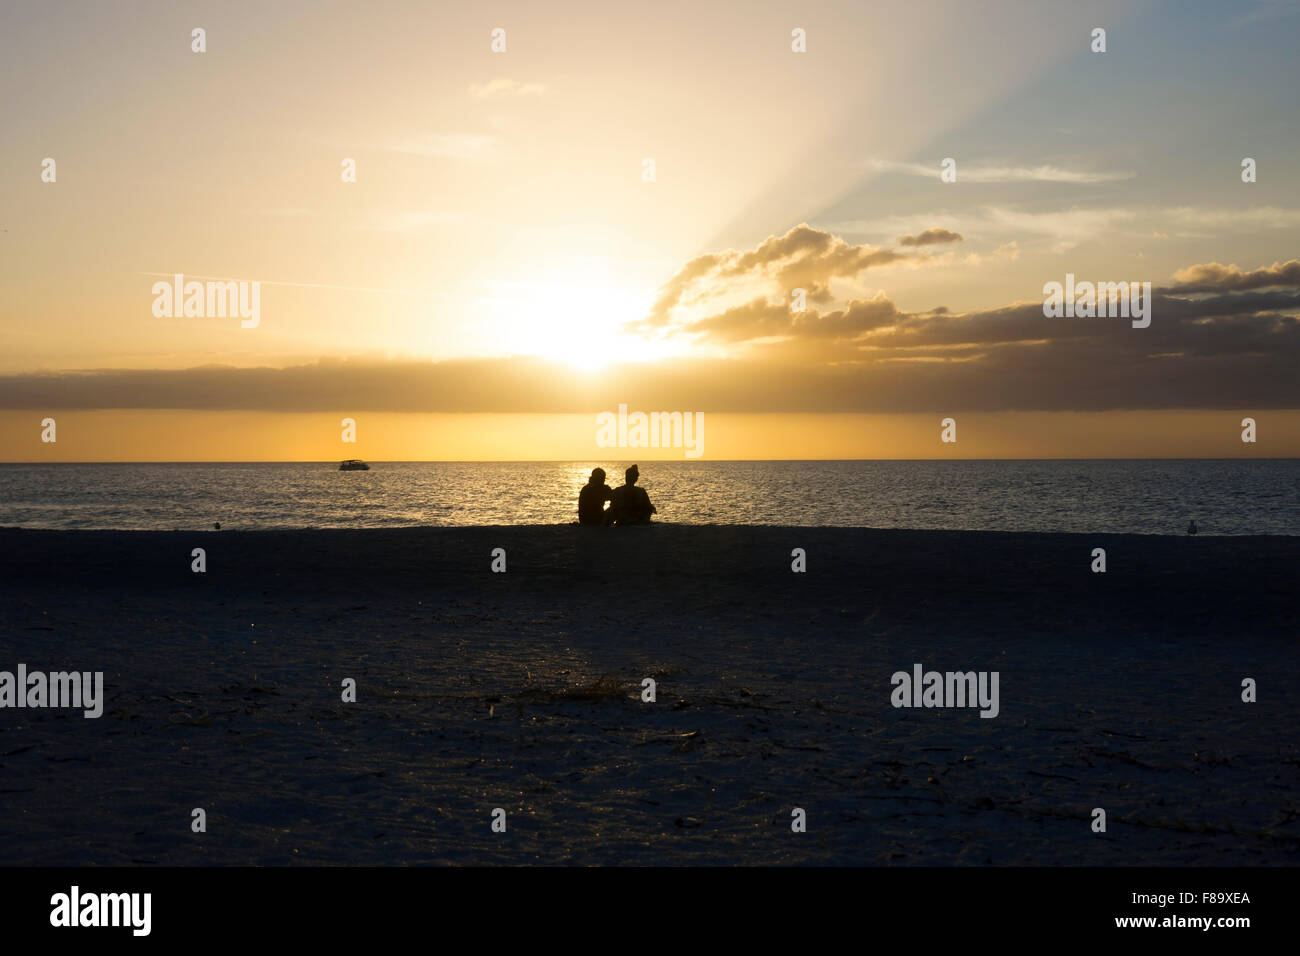 Ein paar genießt einen erstaunlichen goldenen Sonnenuntergang am Sand Key Beach, Golf von Mexiko, Clearwater, Florida, USA Stockfoto